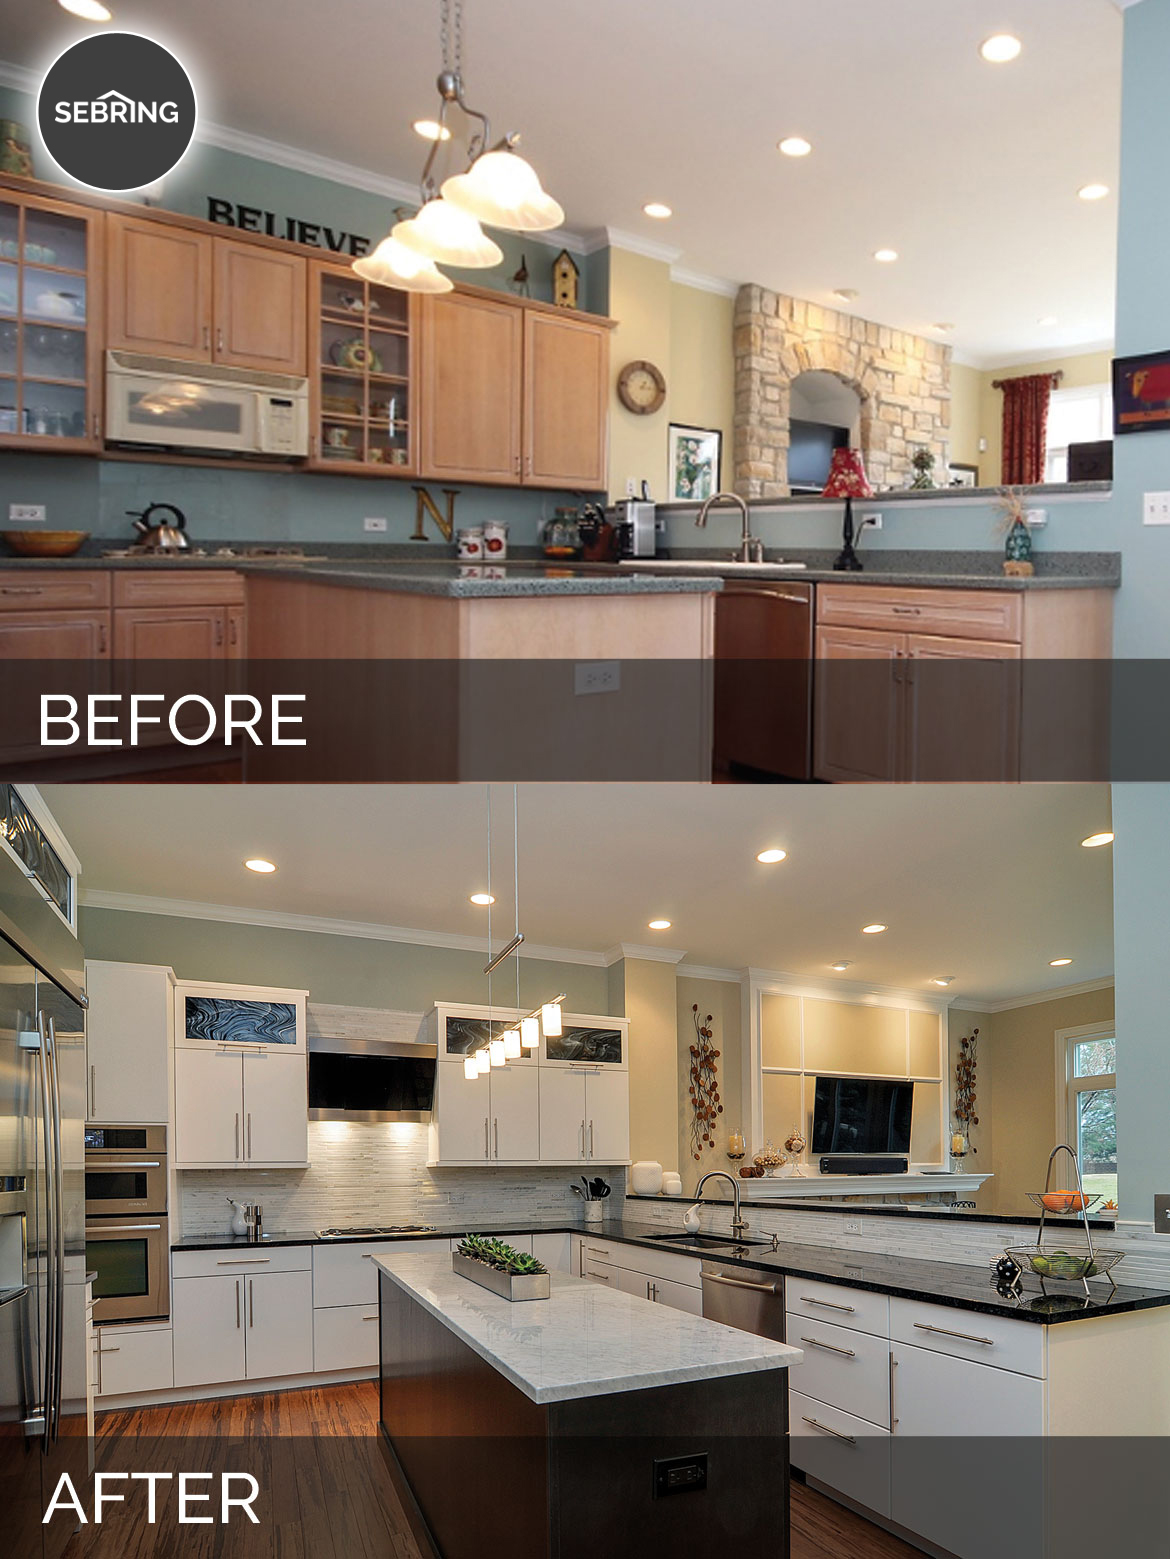 Before & After Kitchen Aurora - Sebring Design Build